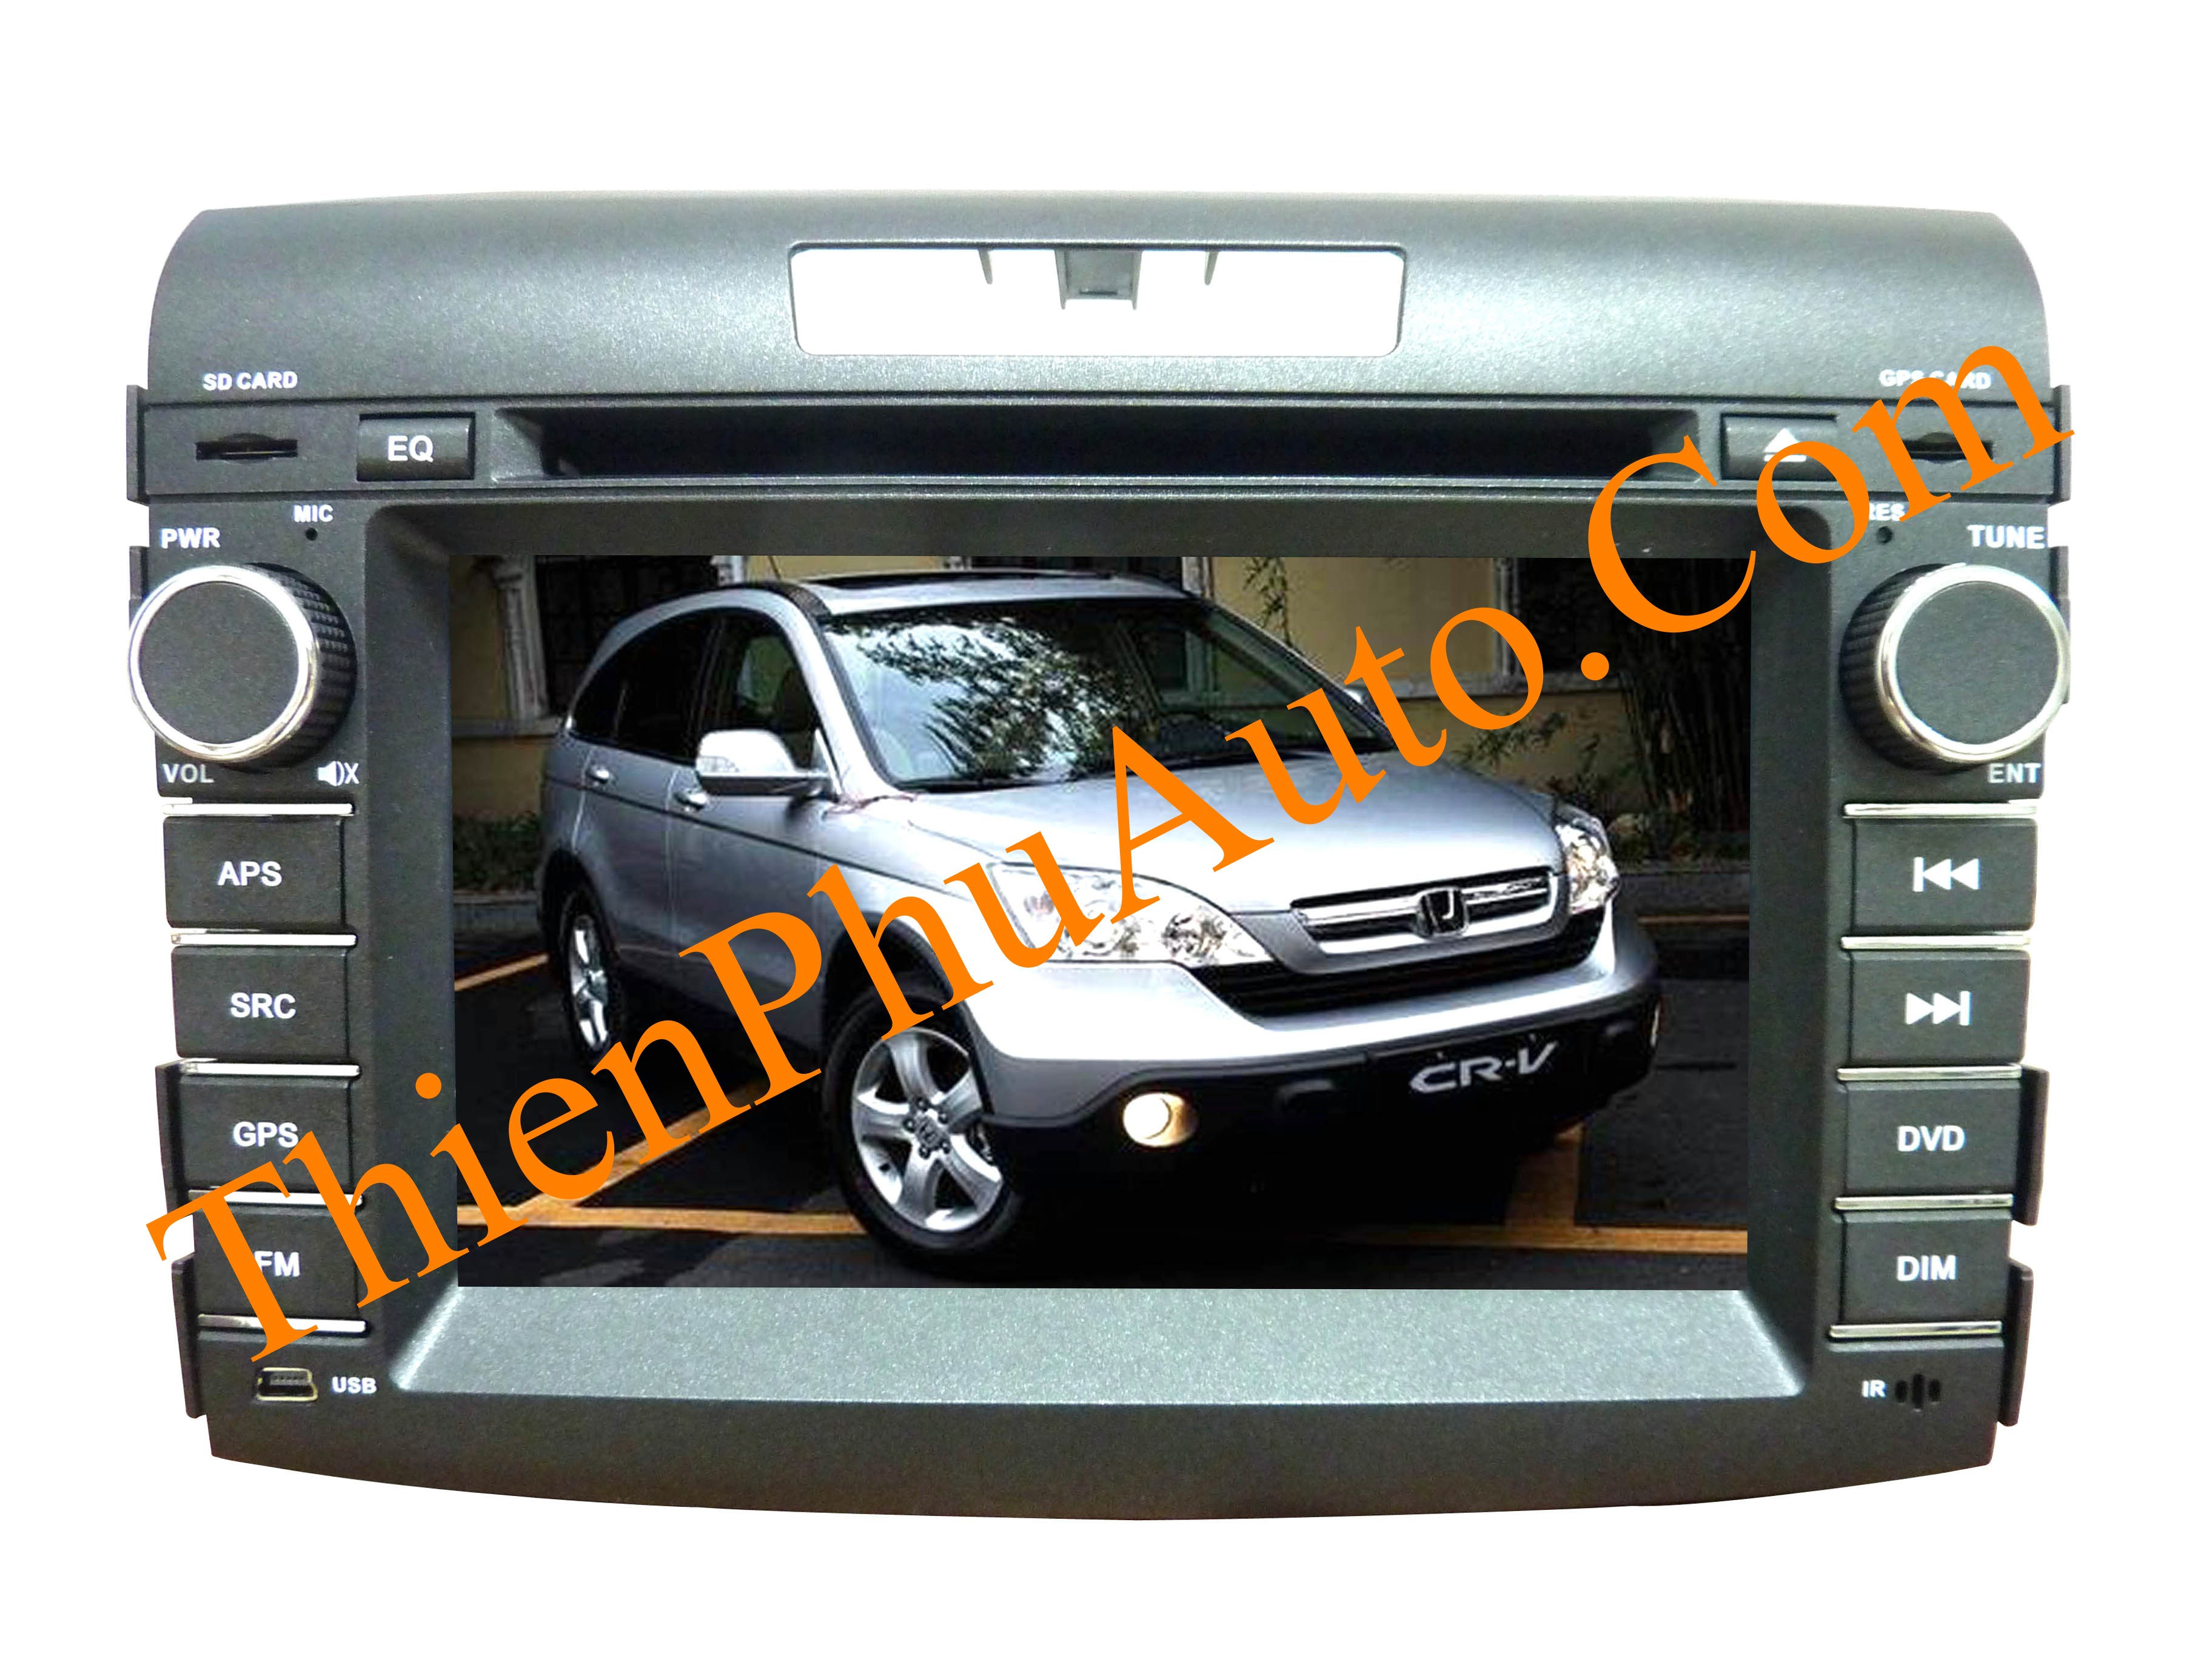 Đầu DVD theo xe Honda CRV 2013 , có canbus cho âm ly theo xe, màn hình 7 inch, liền dưỡng có GPS dẫn đường, cắm giắc theo xe .